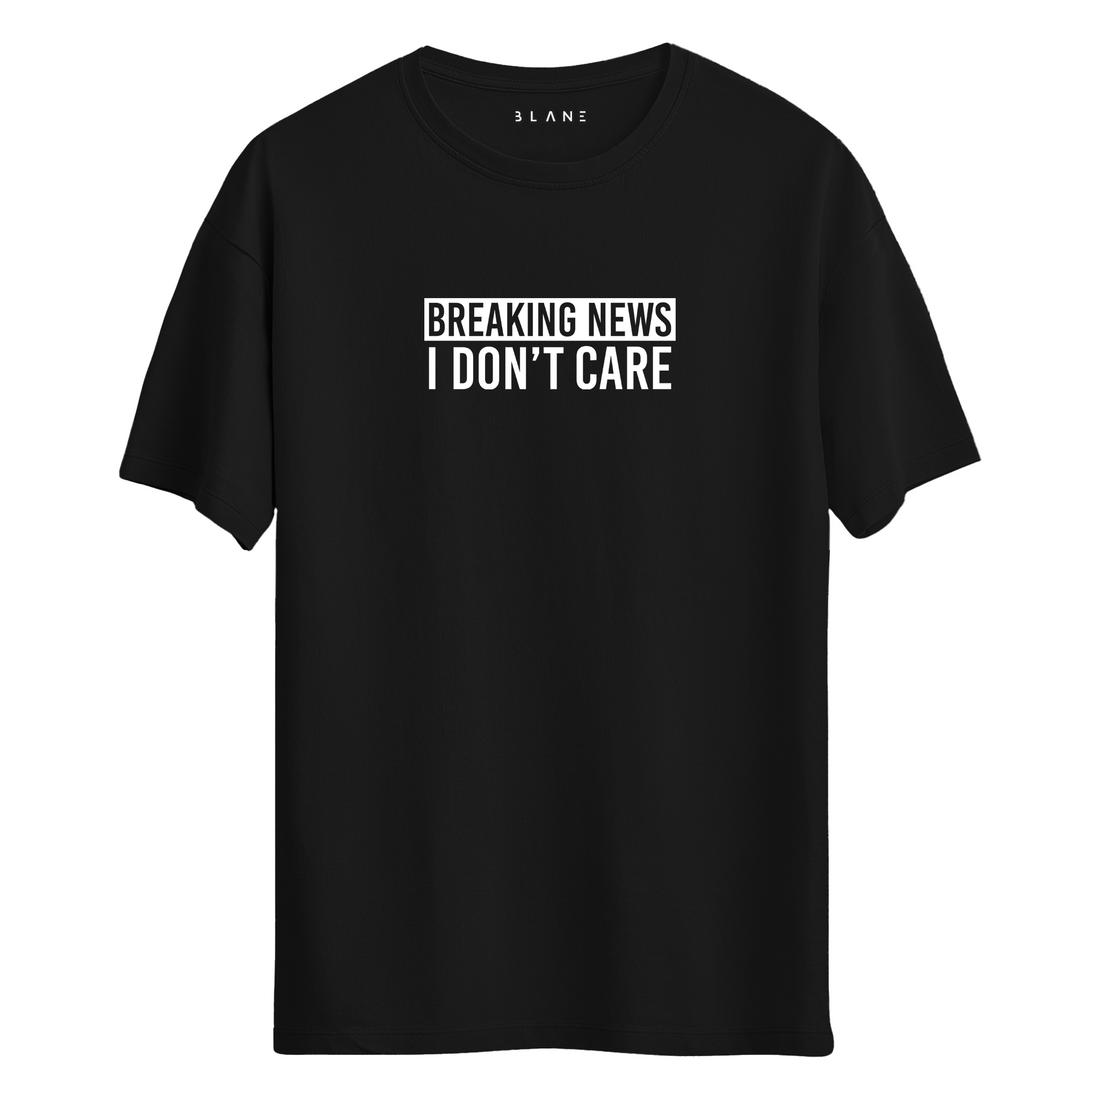 I DON'T CARE - T-Shirt